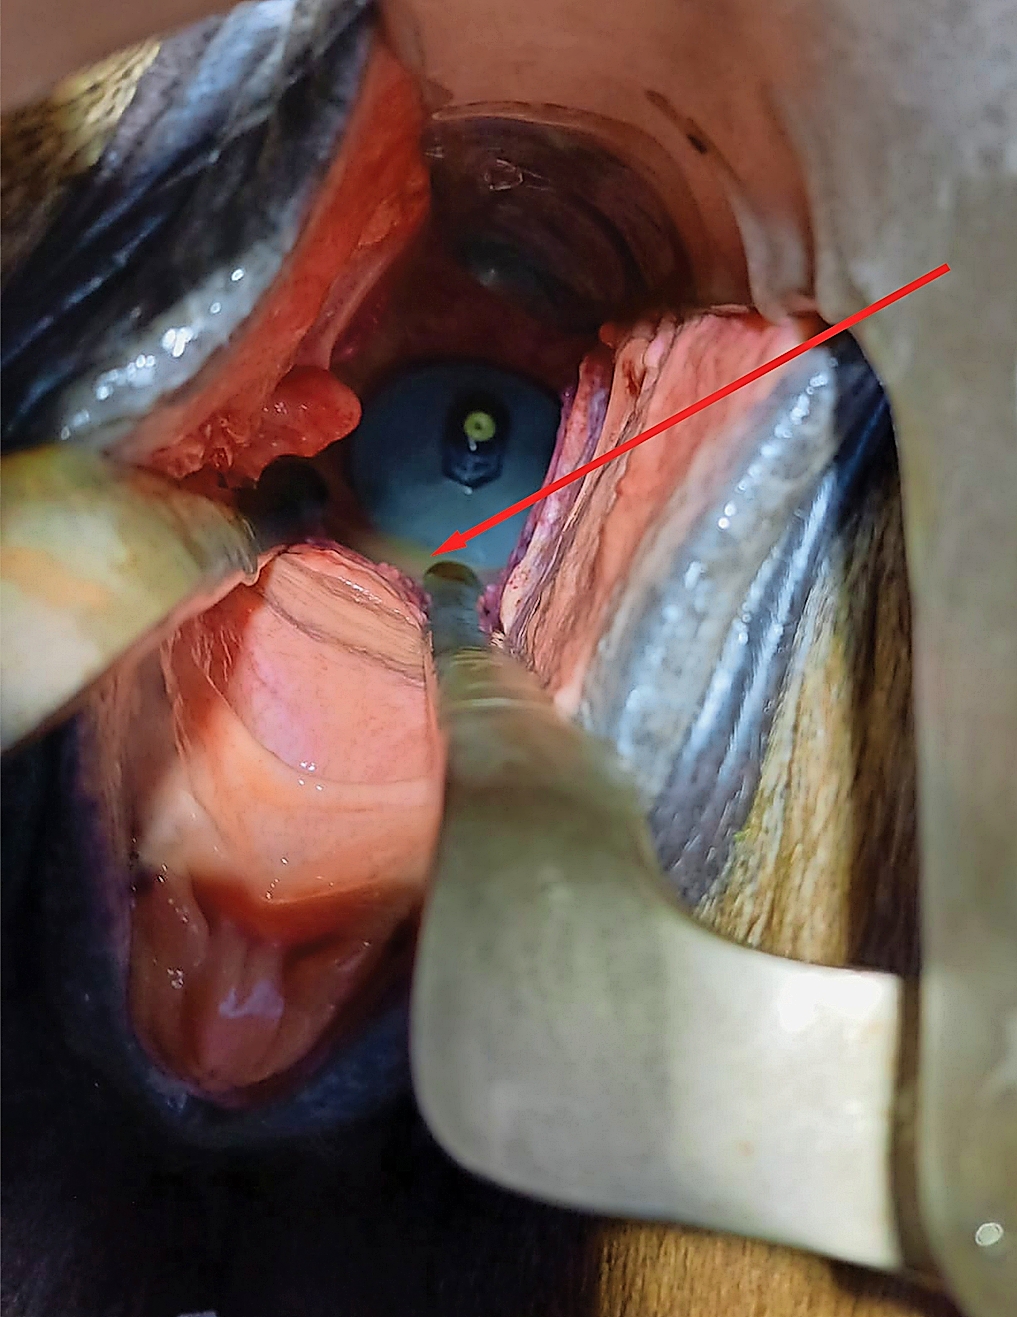 Abb. 5: Blick auf die intravaginale Scheibe. Der Stent ist zu diesem Zeitpunkt schon seit fünf Monaten implantiert. Der rote Pfeil zeigt auf den Flüssigkeitssee vor der intravaginalen Scheibe.